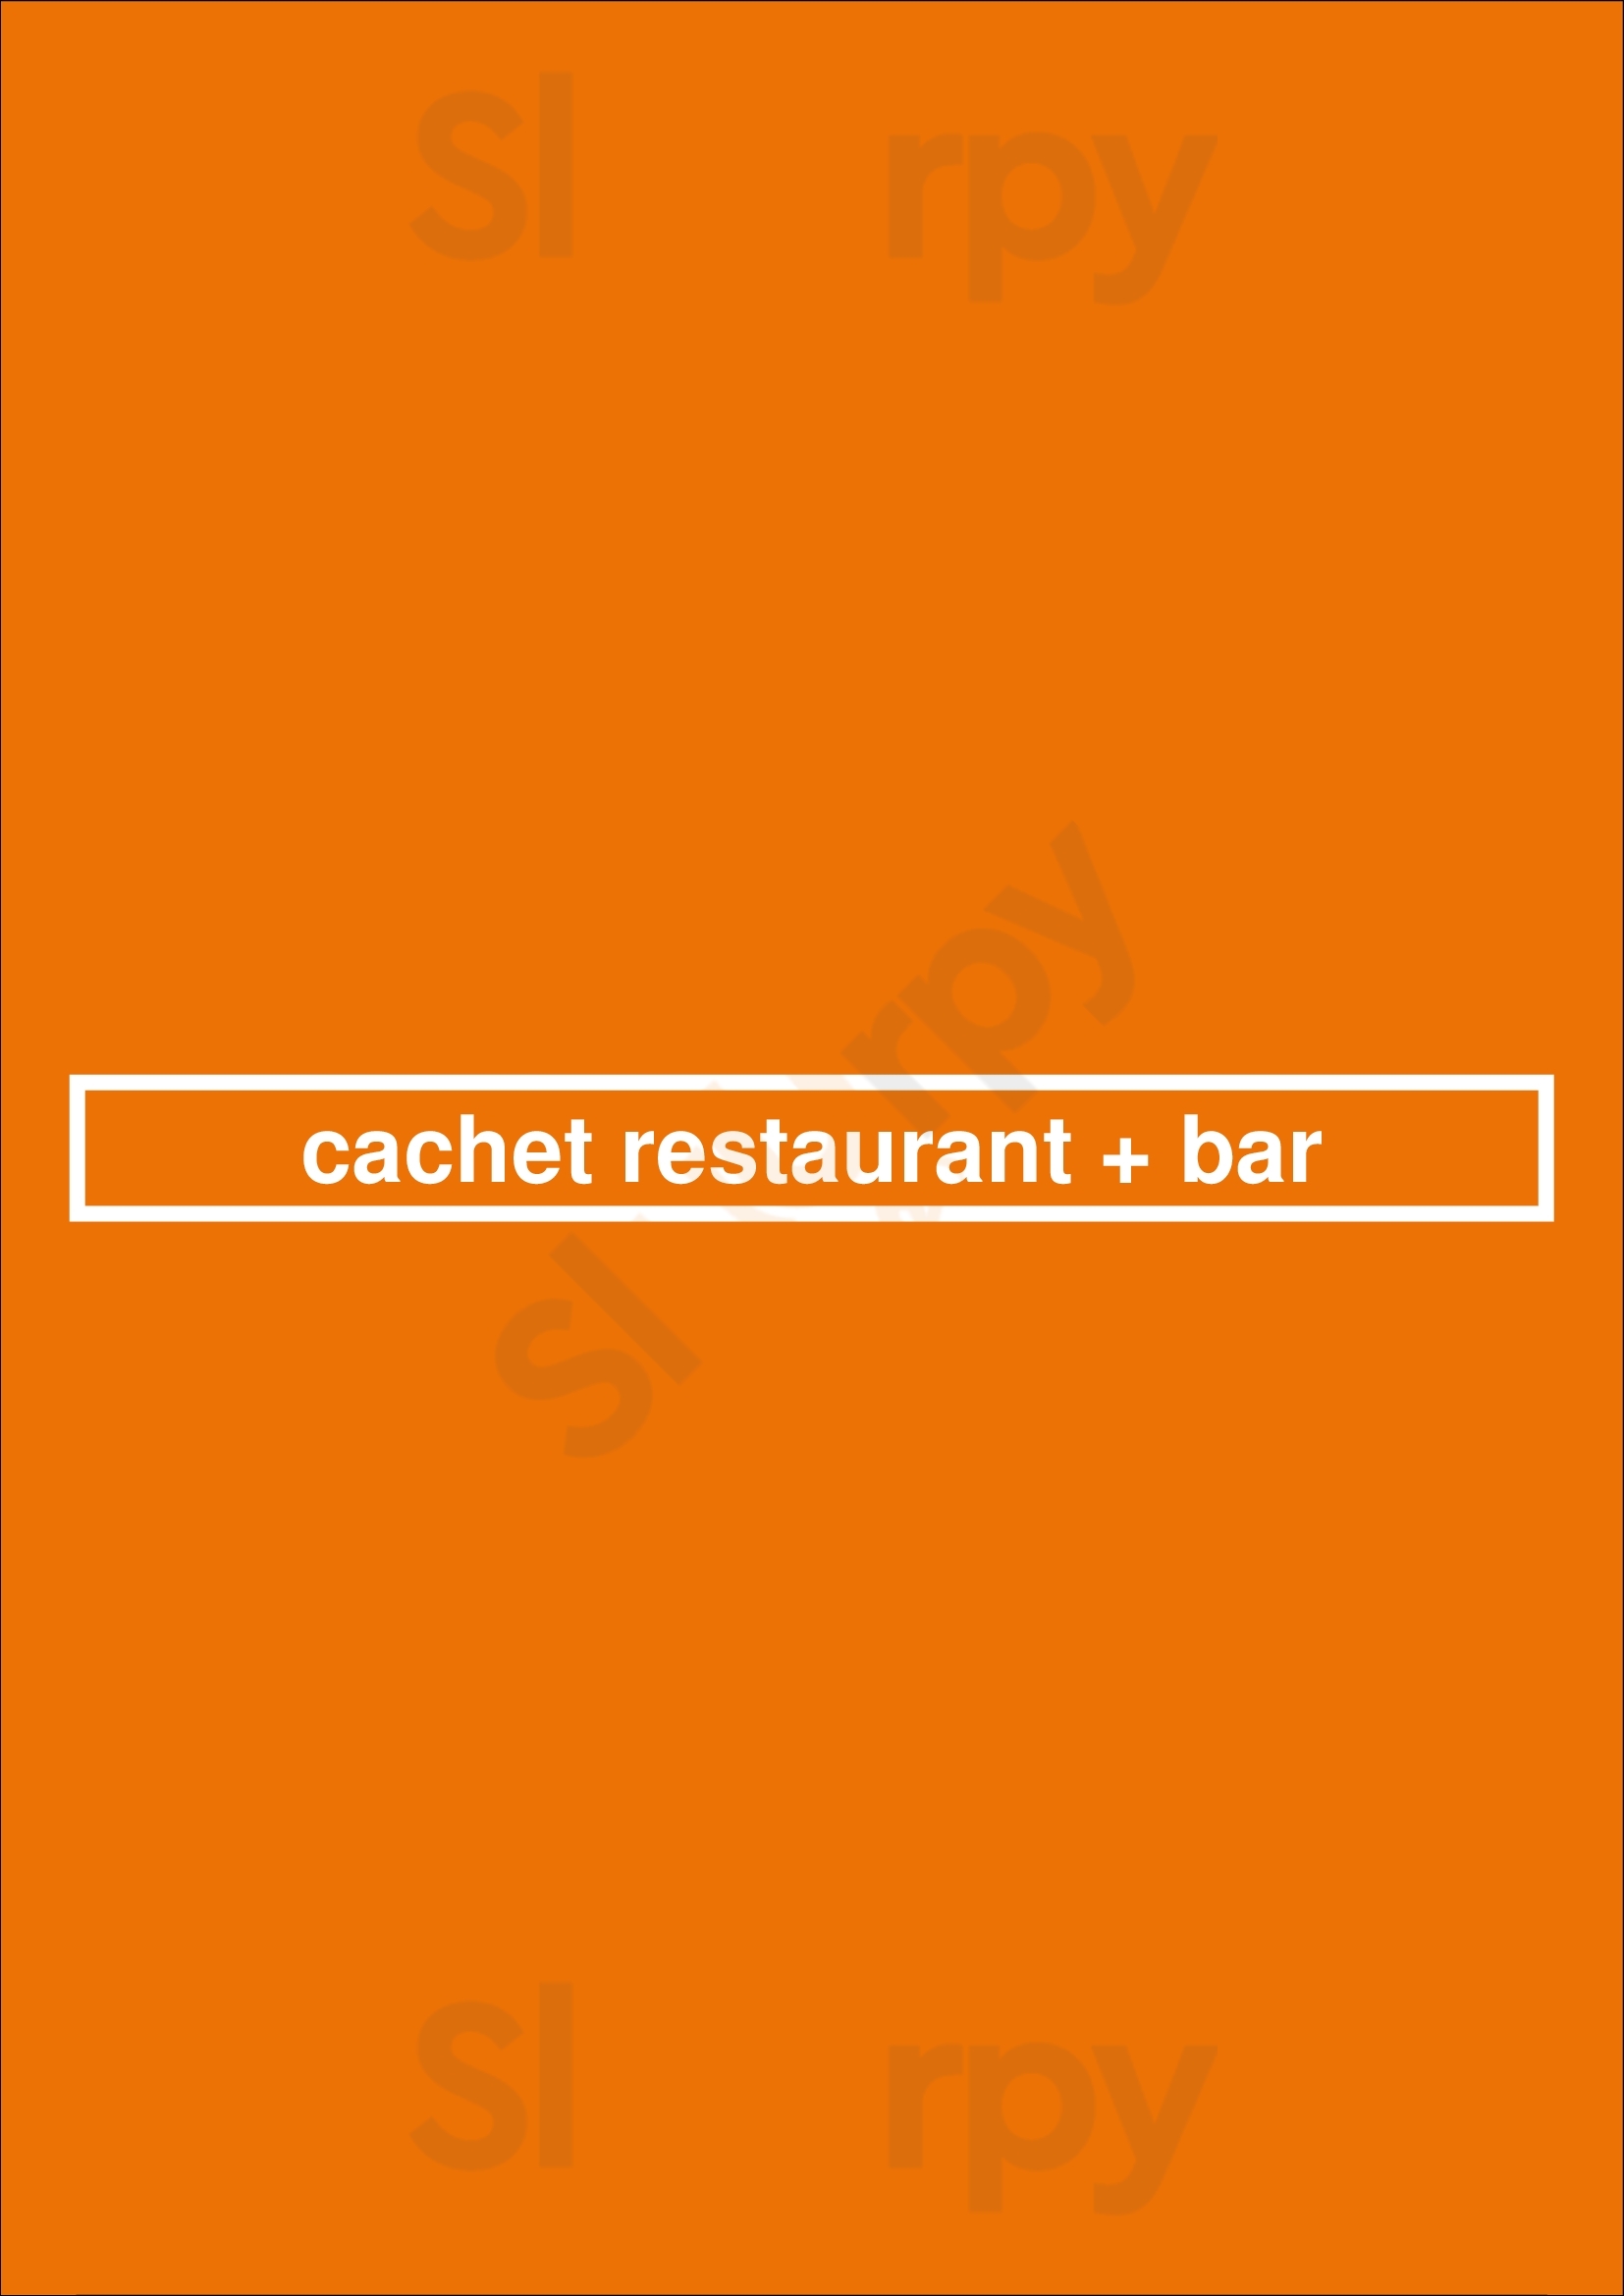 Cachet Restaurant + Bar Newmarket Menu - 1